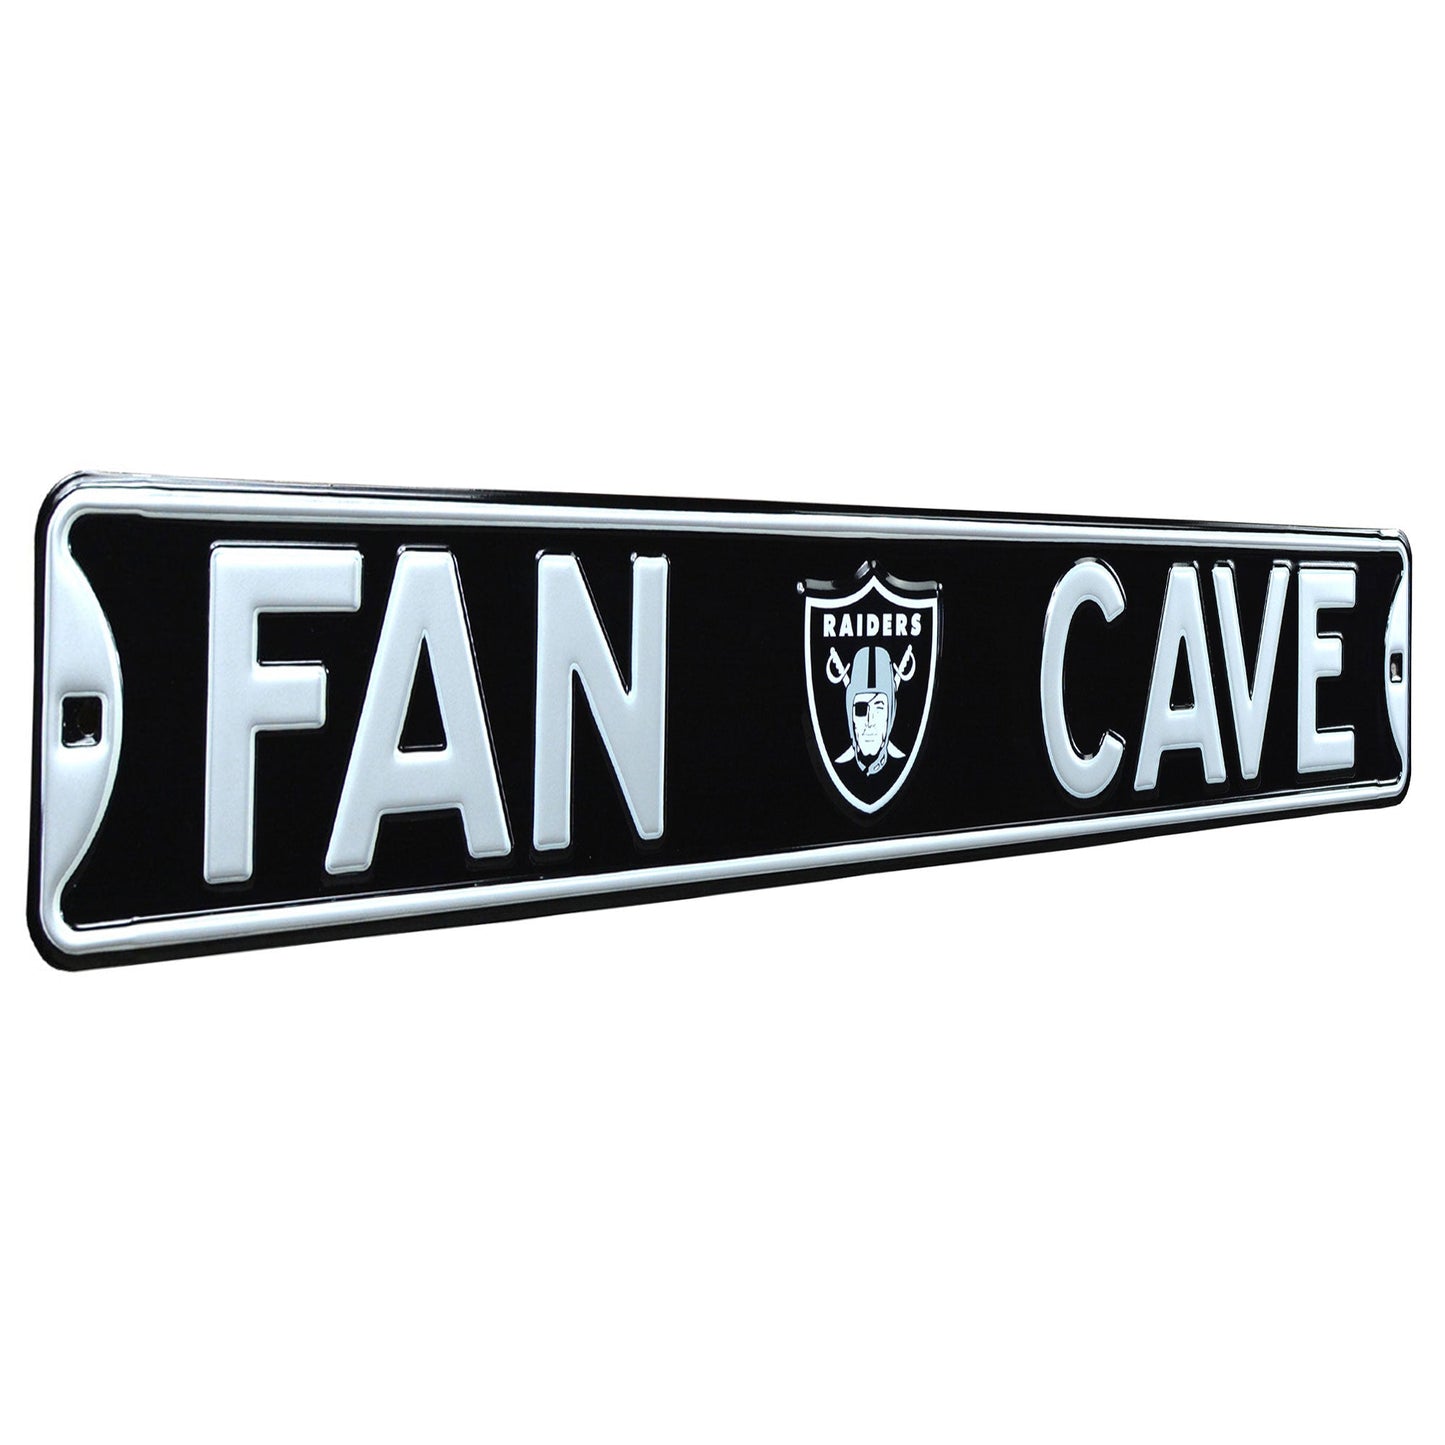 Las Vegas Raiders - FAN CAVE - Embossed Steel Street Sign